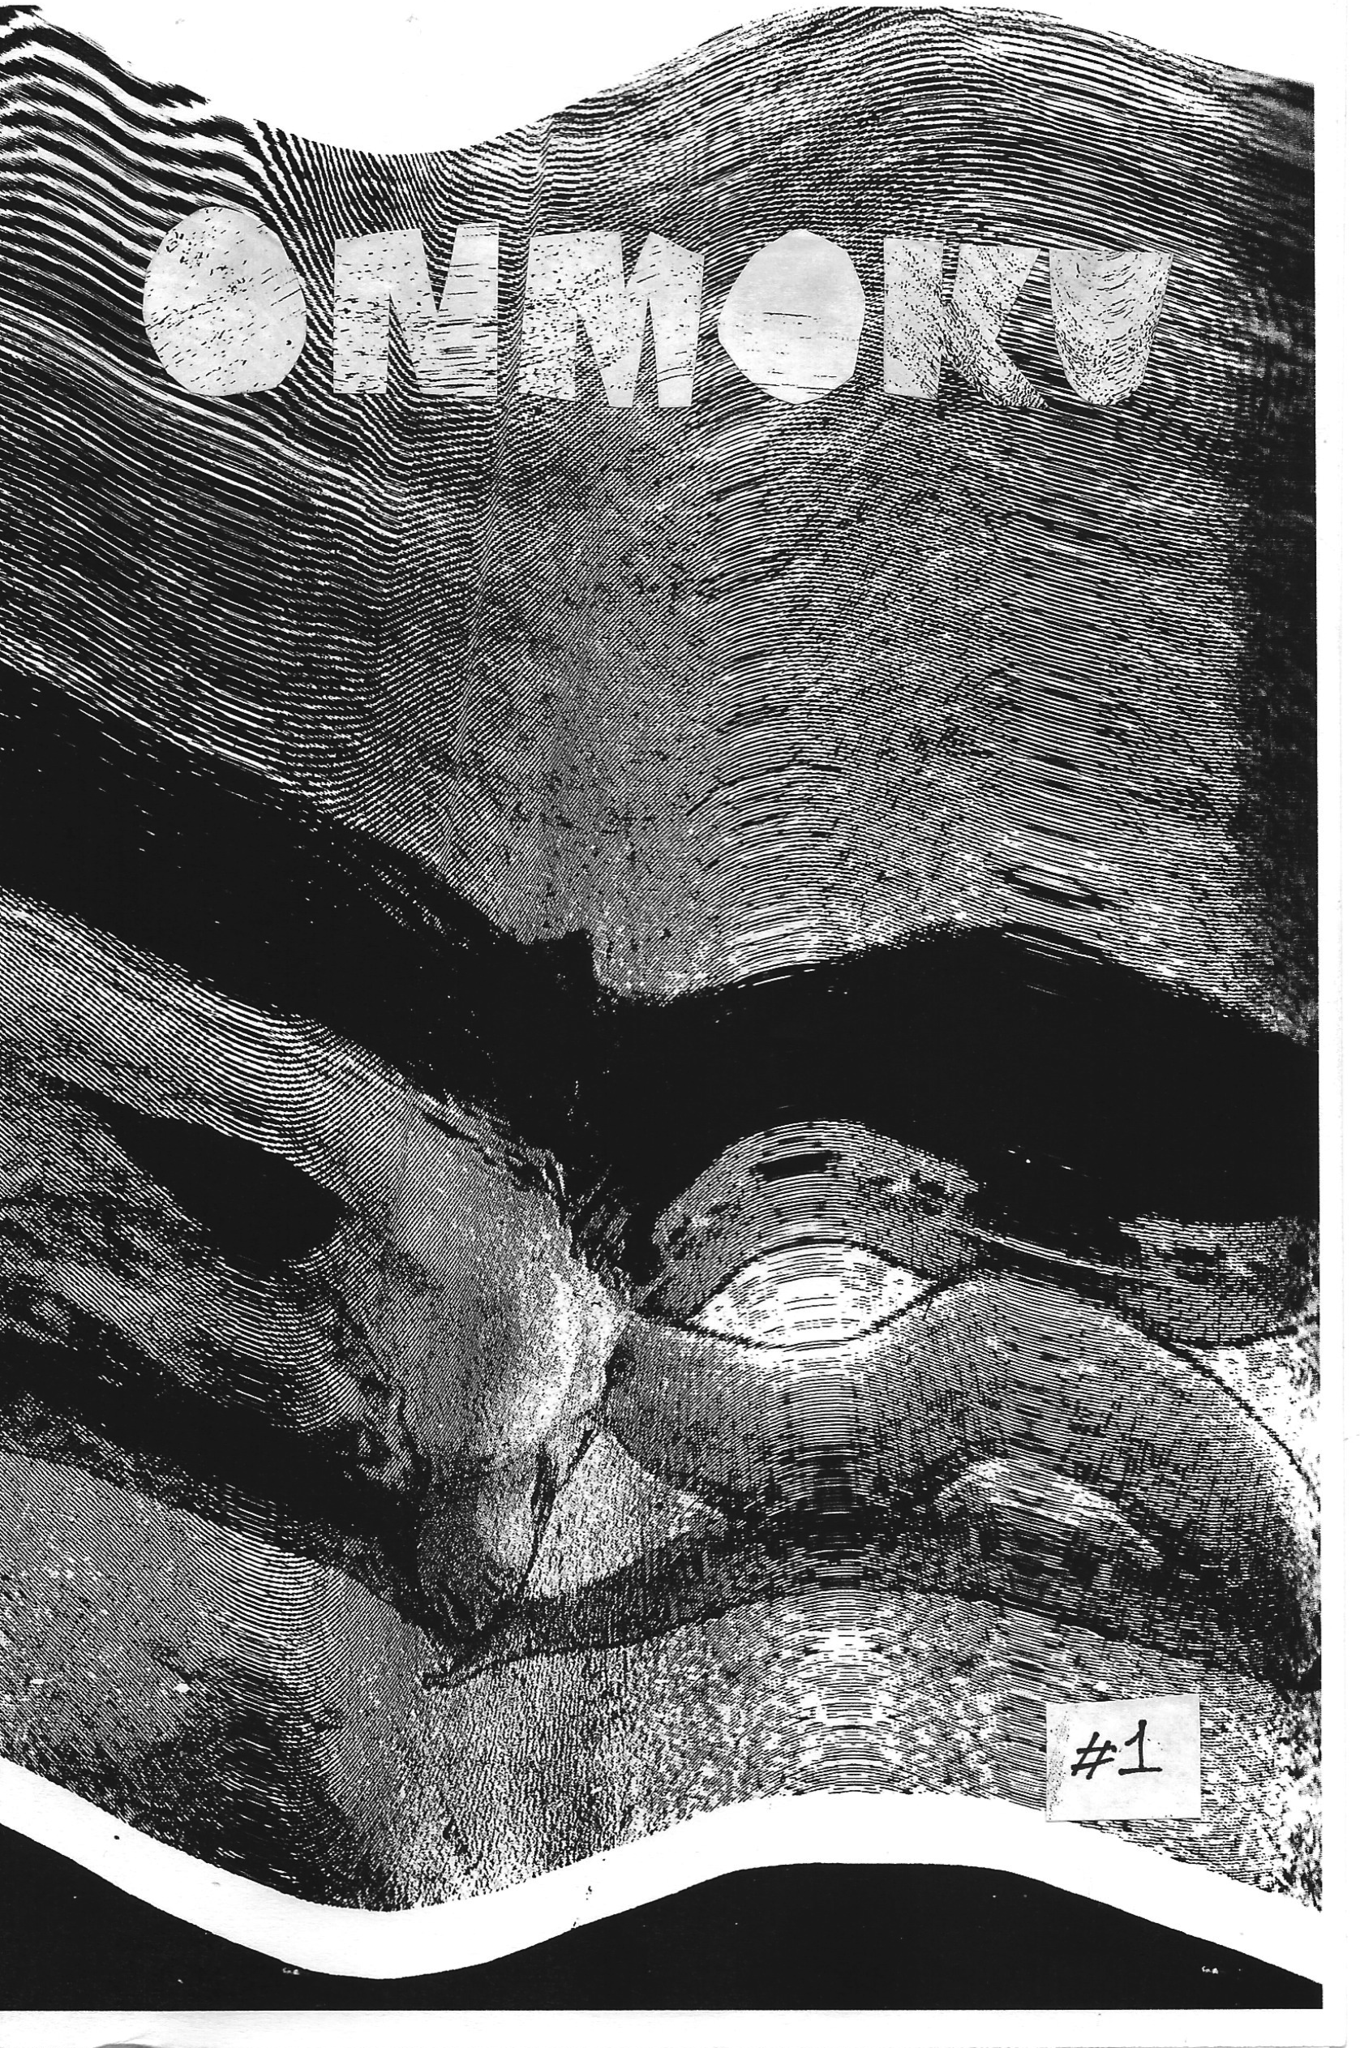 Onmoku Poster - #1 - 16x24 - calhoun
